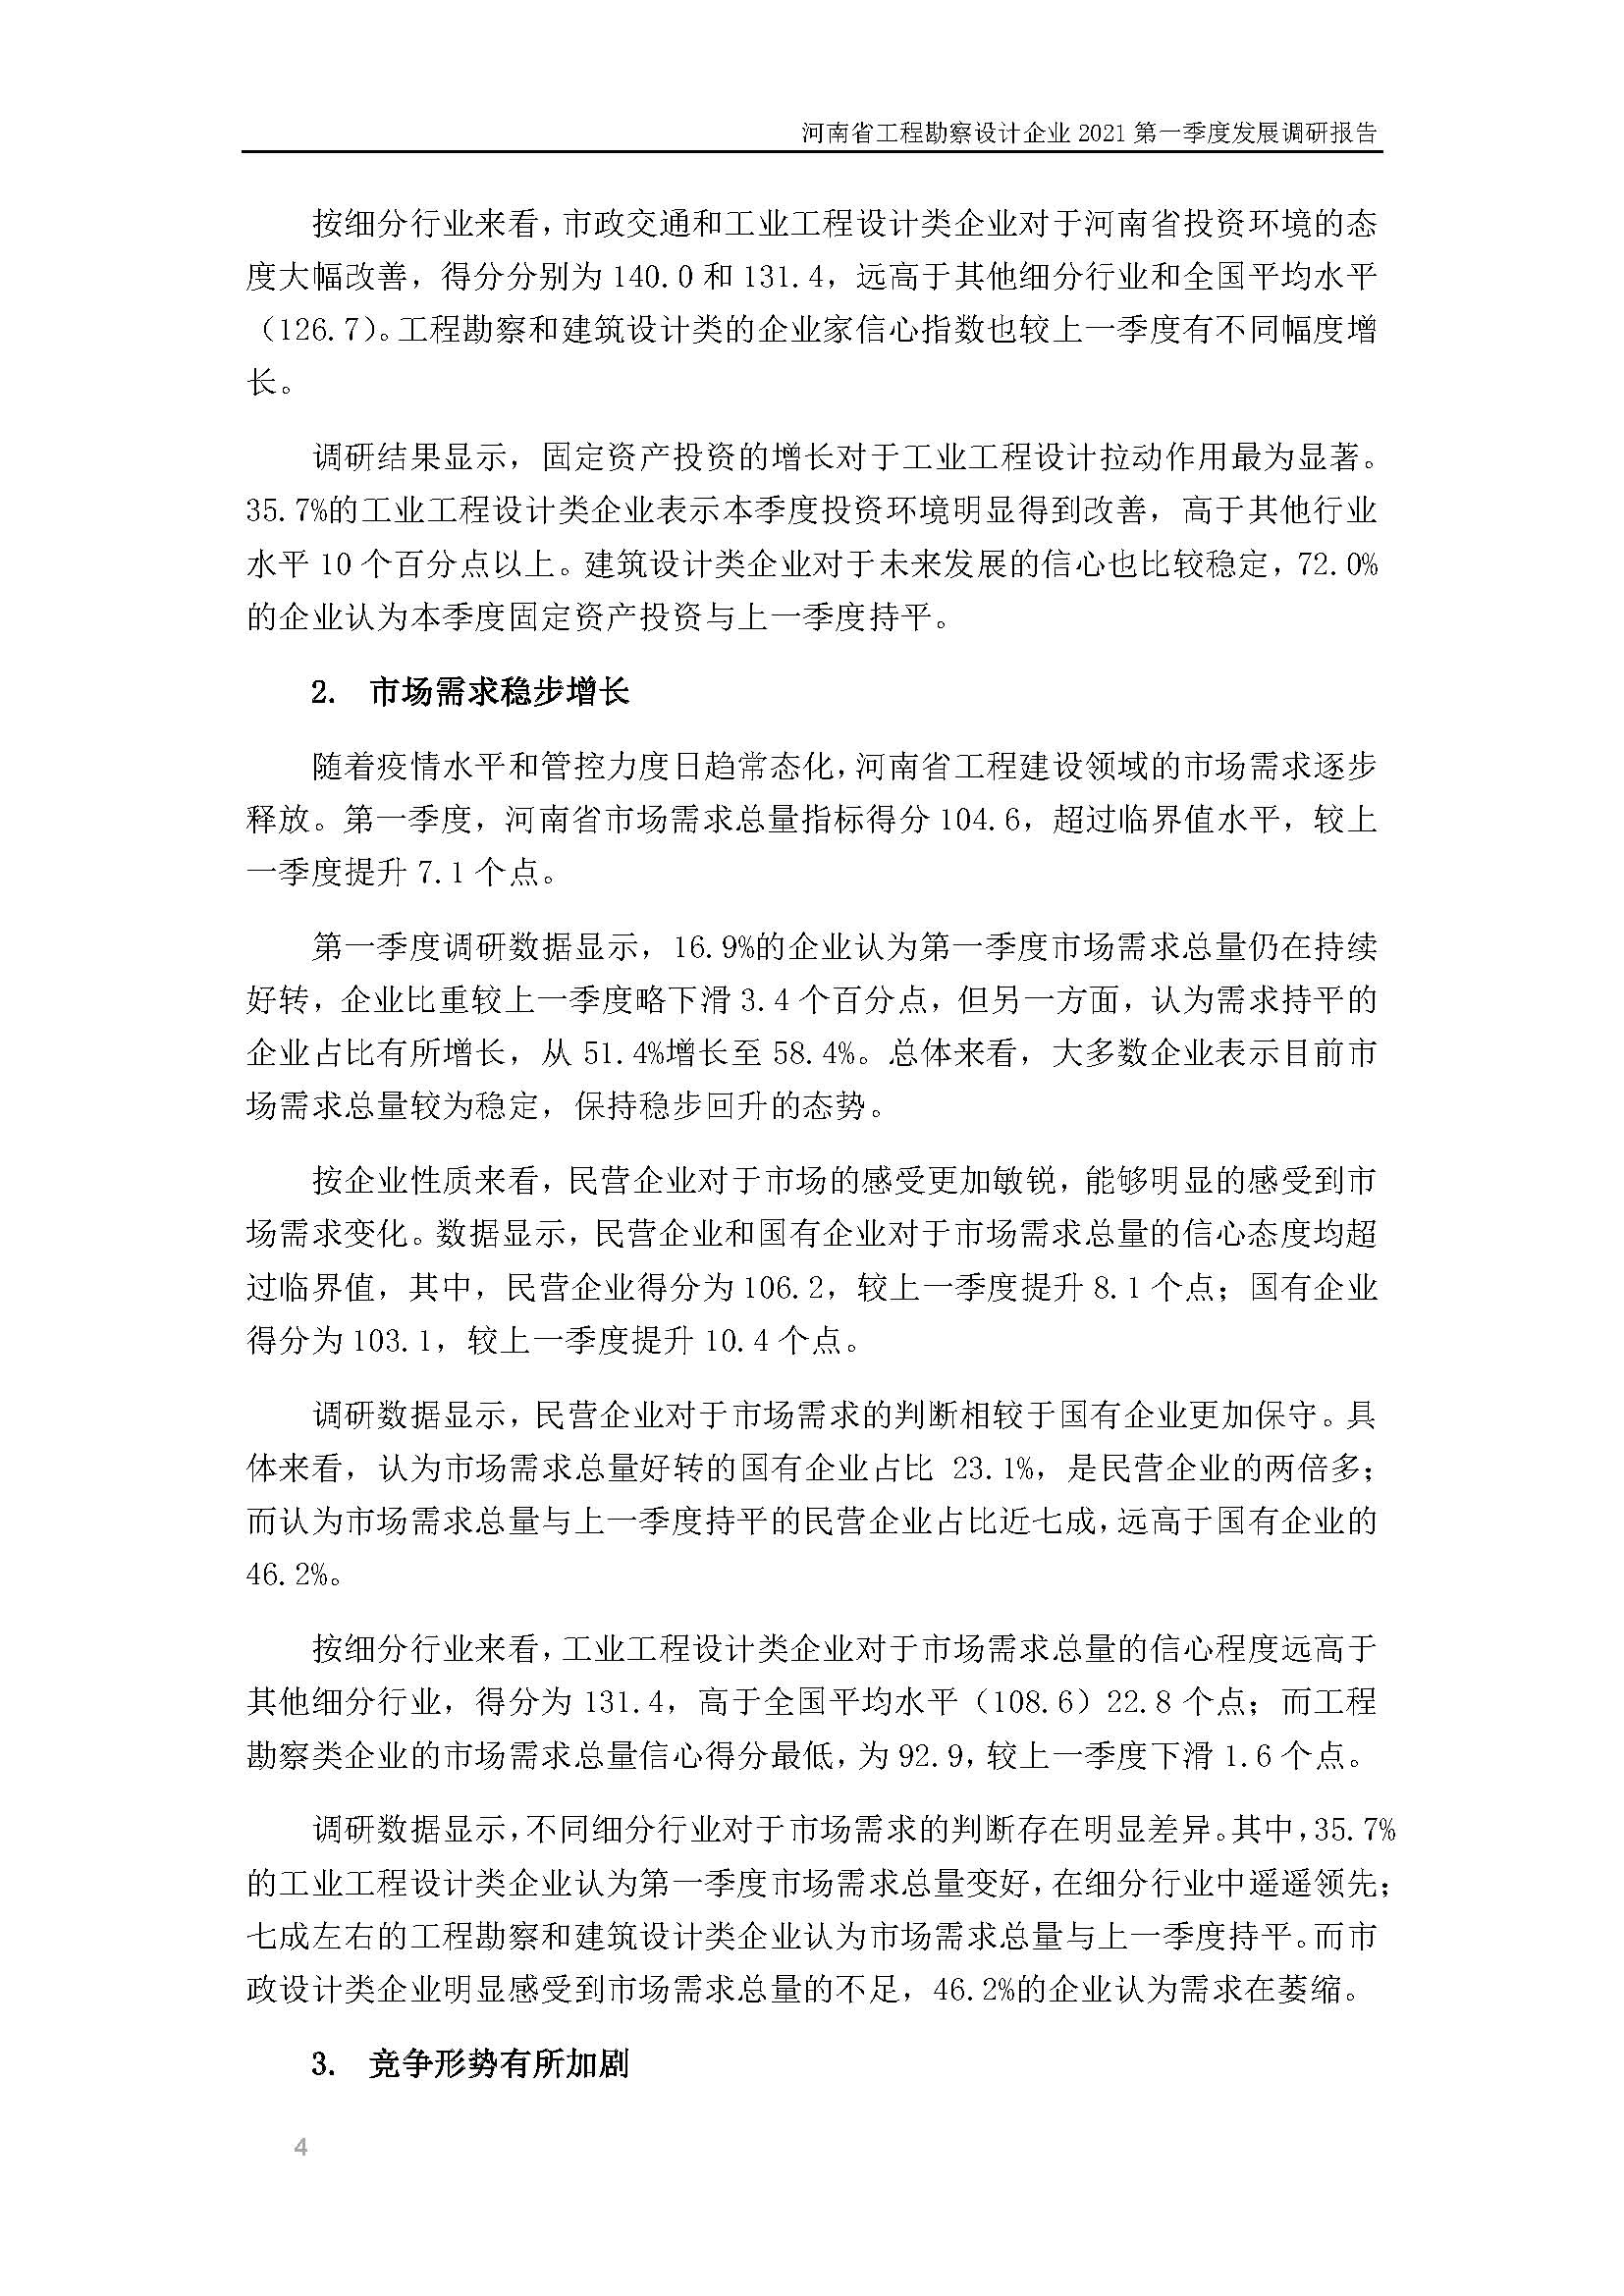 河南省工程勘察设计企业2021第一季度发展调研报告二_页面_5.jpg